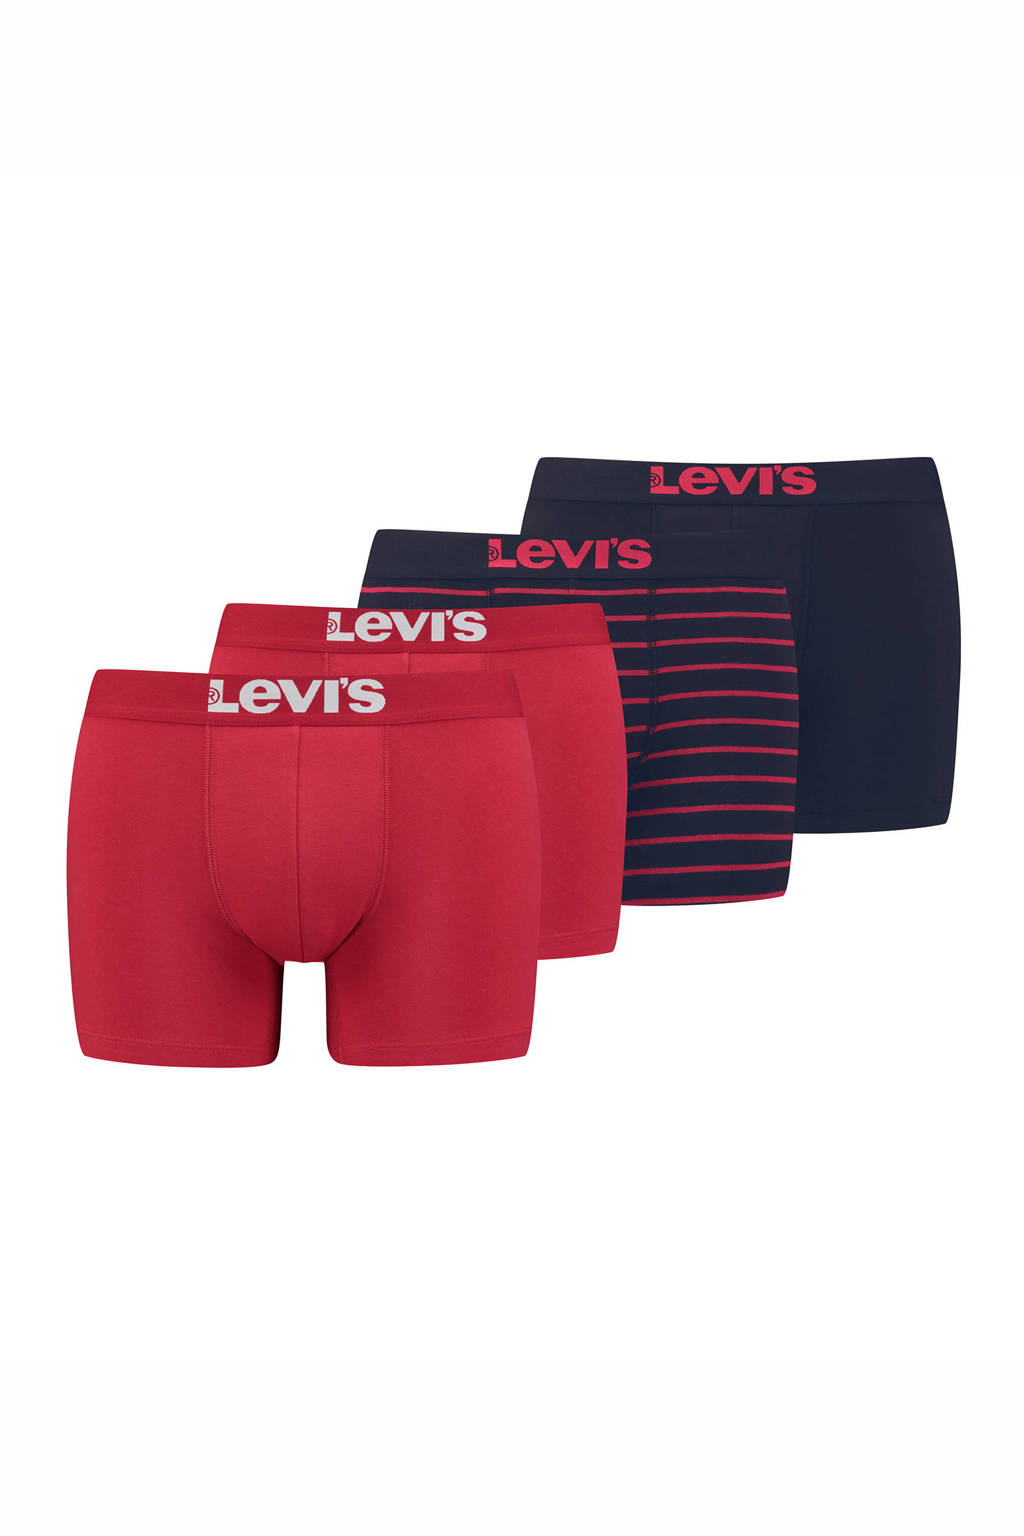 Levi's boxershort (set van 4), Rood/zwart